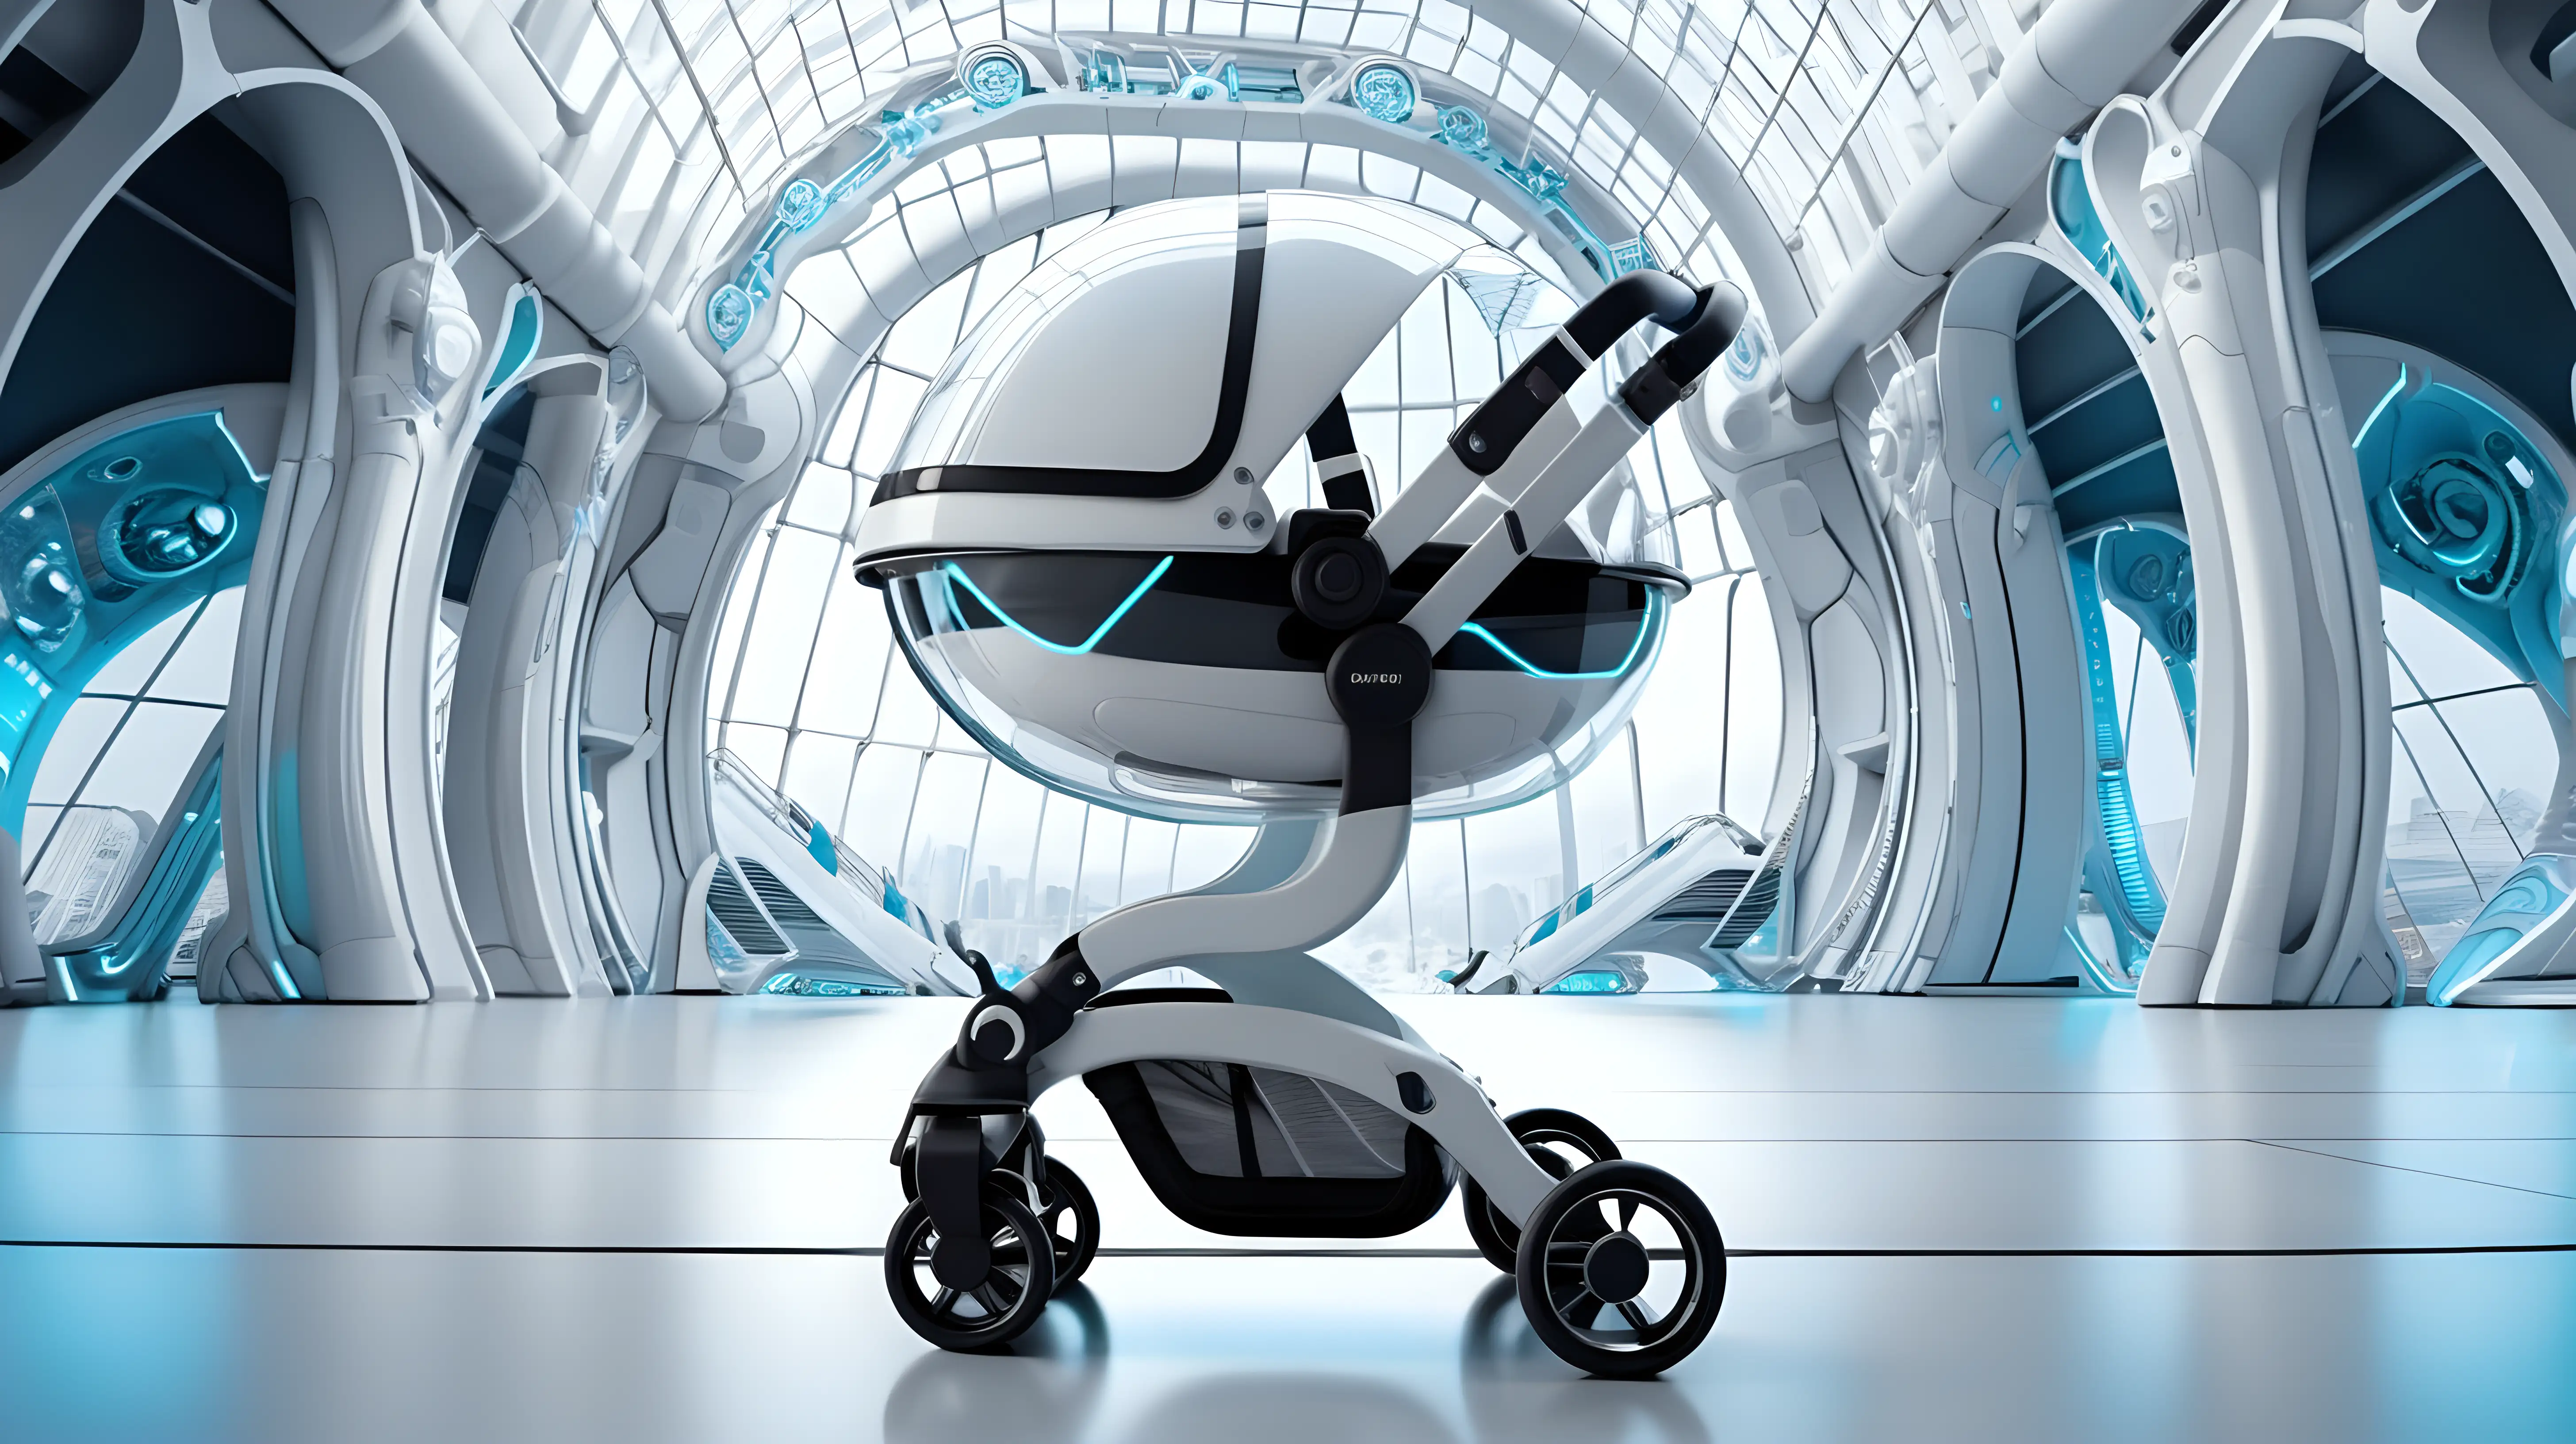 futuristic stroller set in a futuristic architectural background